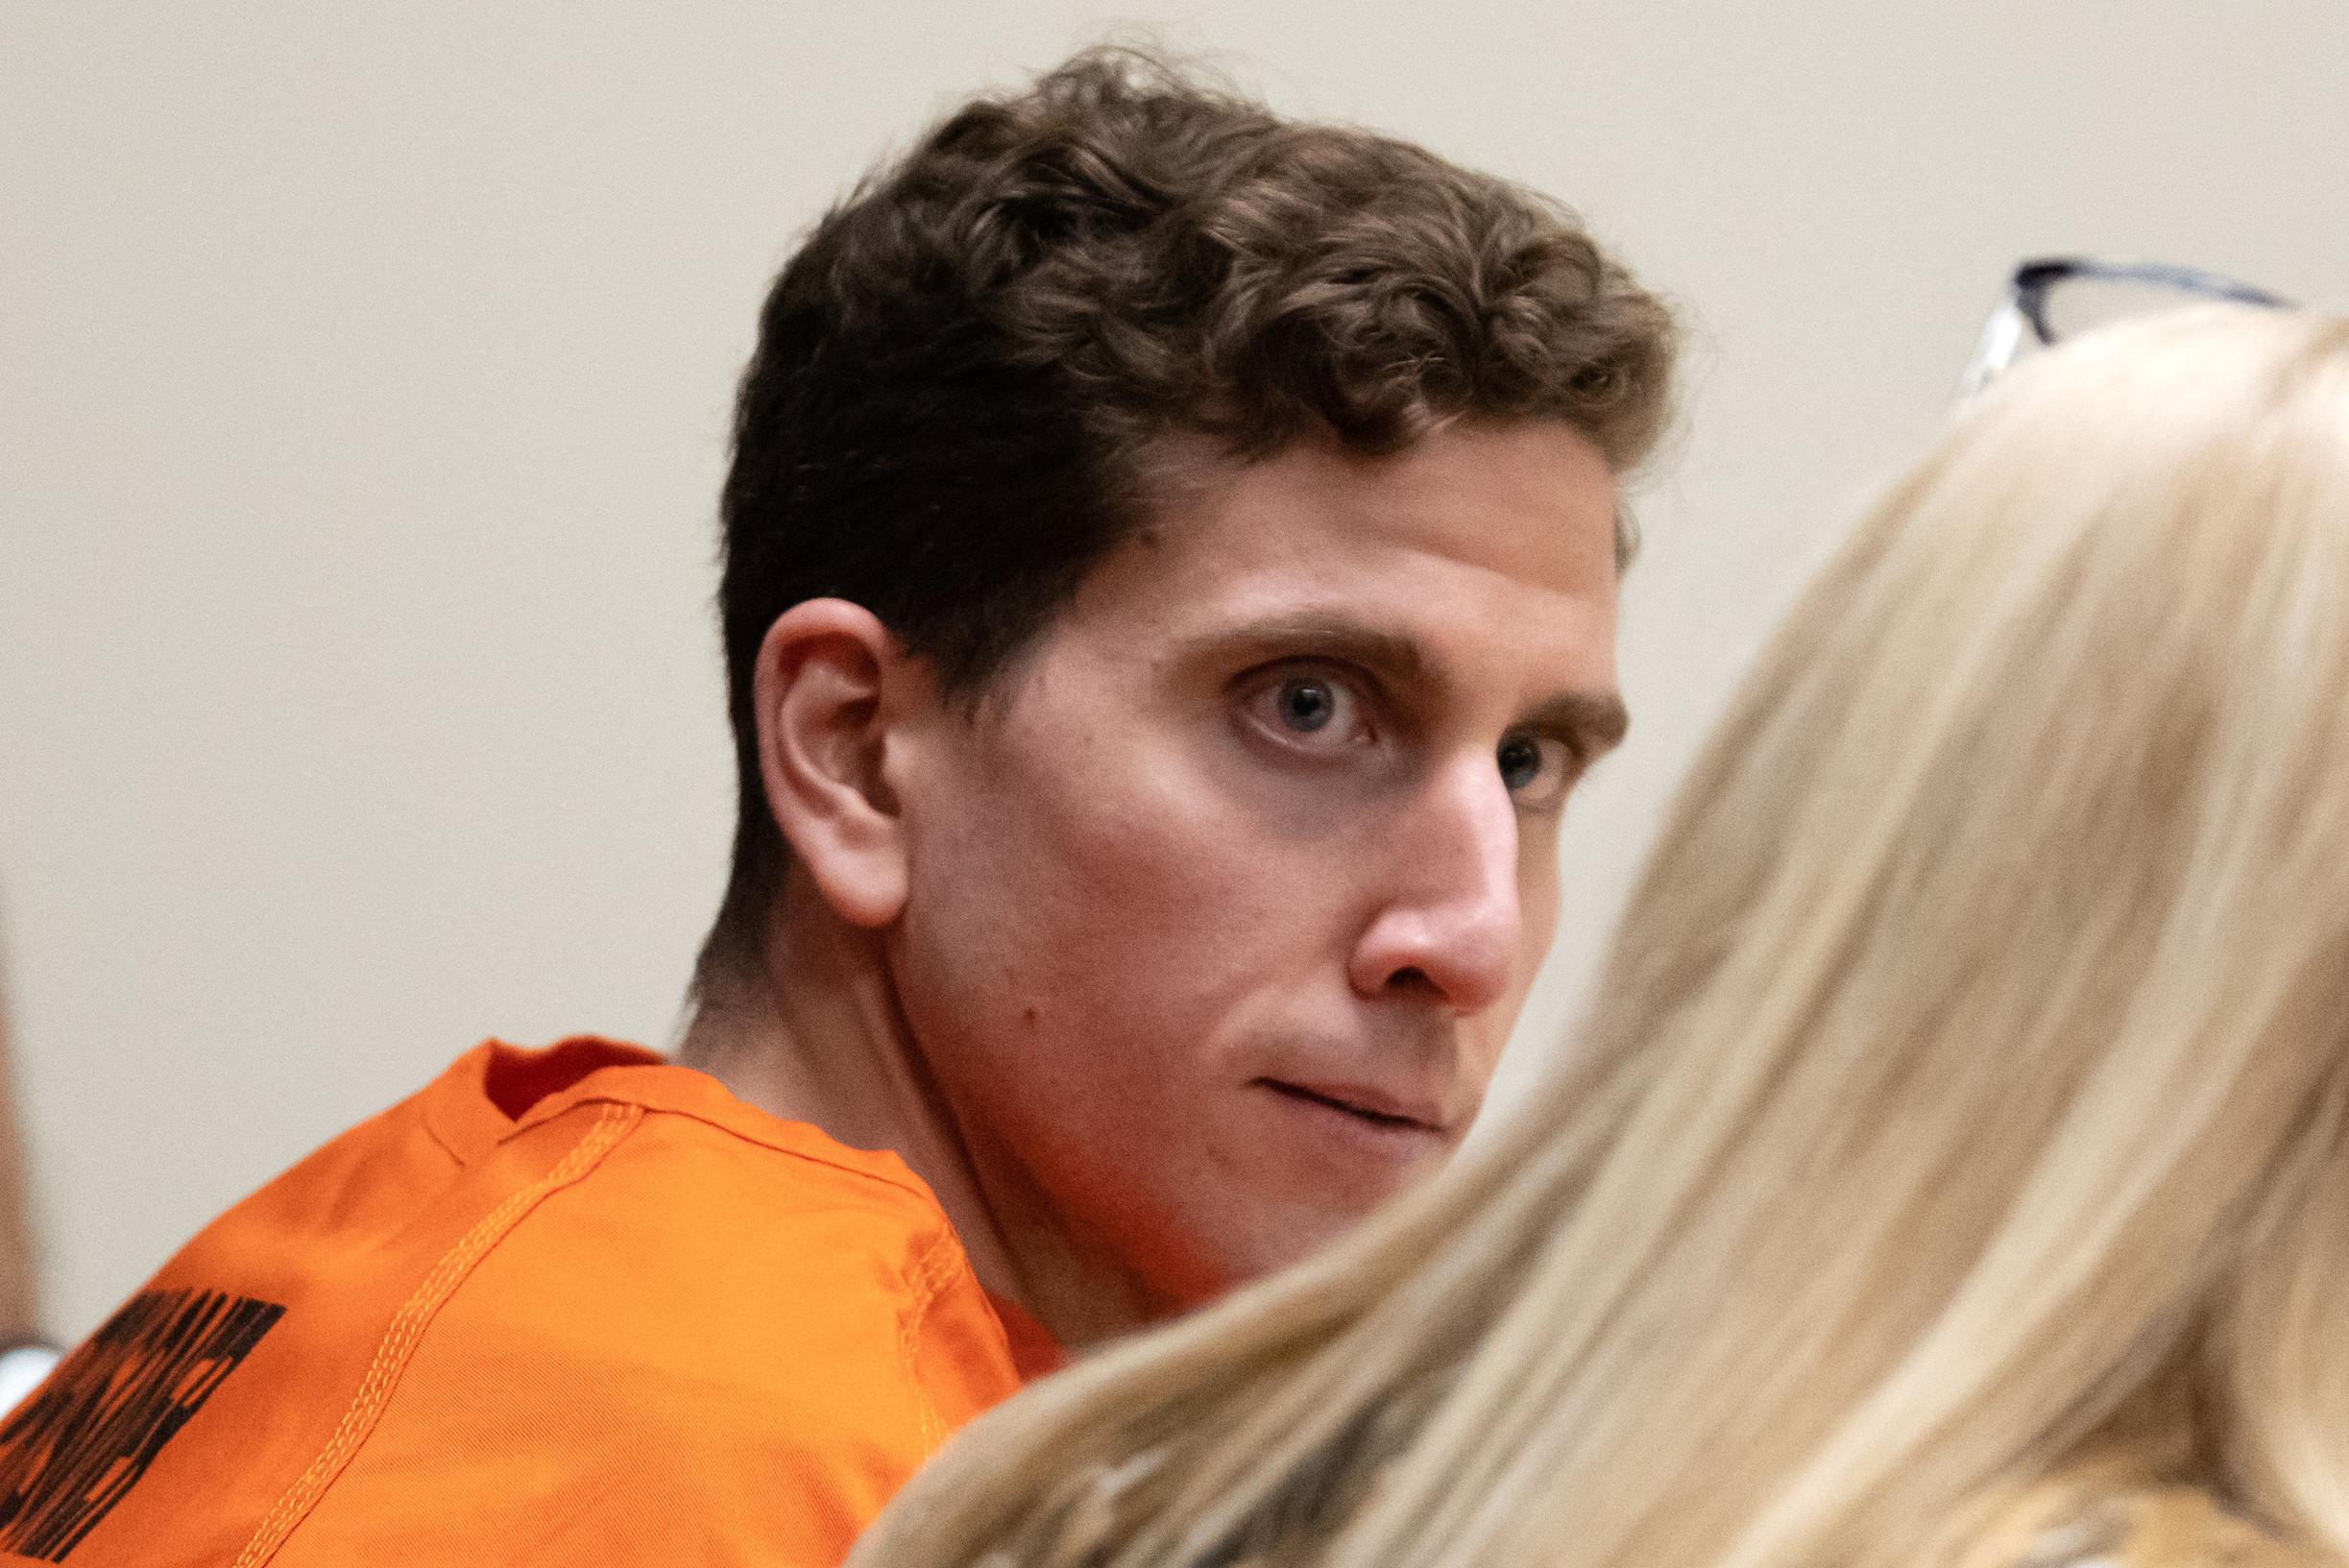 Catturato grazie al suo cellulare e al DNA: i documenti del tribunale forniscono maggiori dettagli sull’uomo di 20 anni sospettato di aver ucciso quattro studenti in Idaho